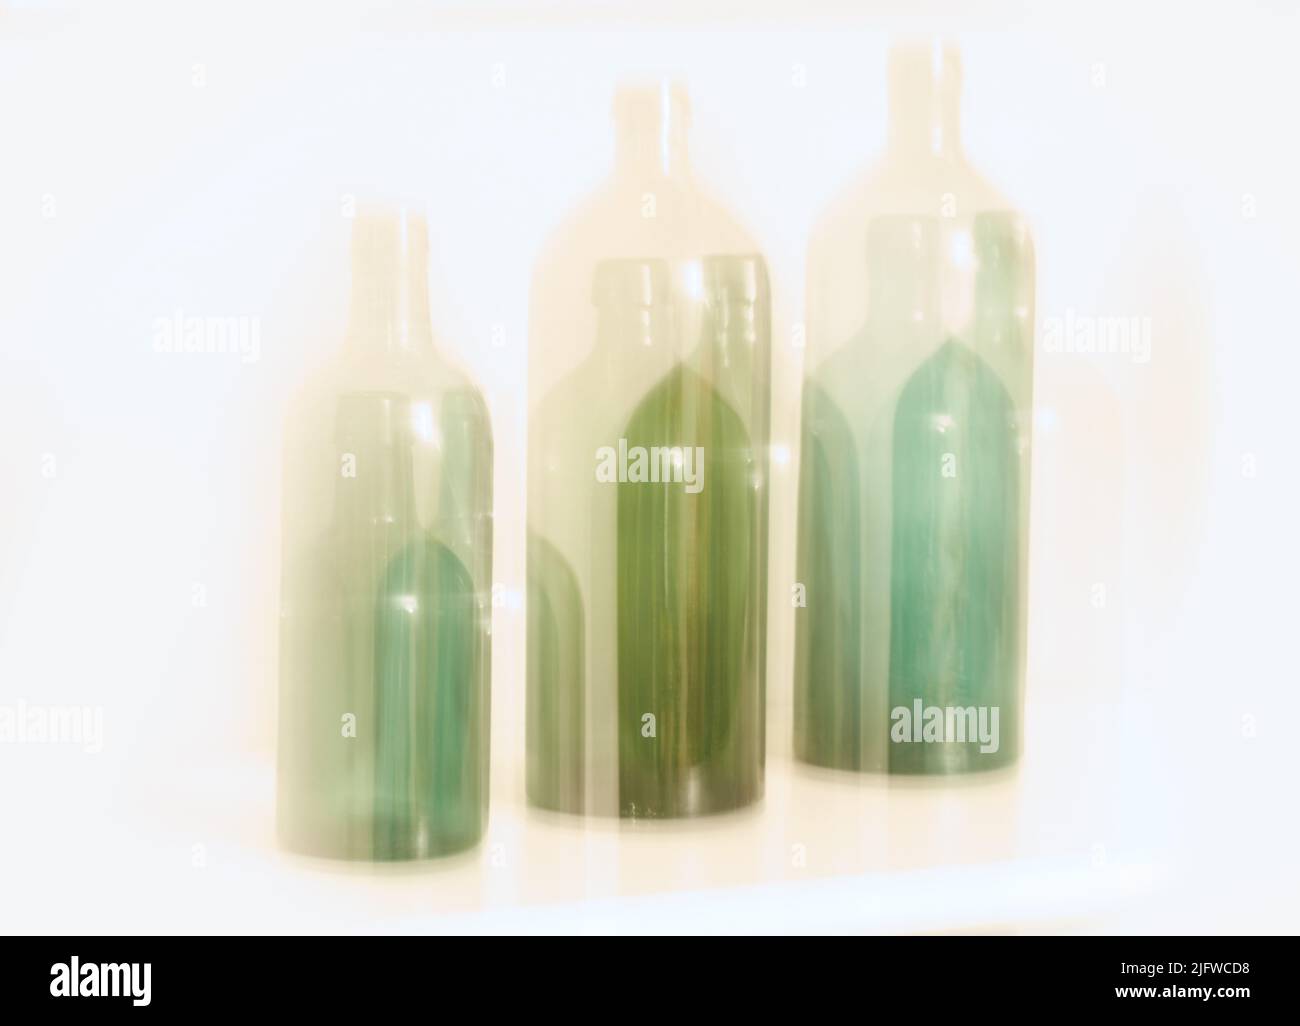 Design artistique de vieilles bouteilles en verre avec effet de mouvement de blury, isolé sur fond blanc. Lumière colorée floue abstraite sur trois verres verts Banque D'Images